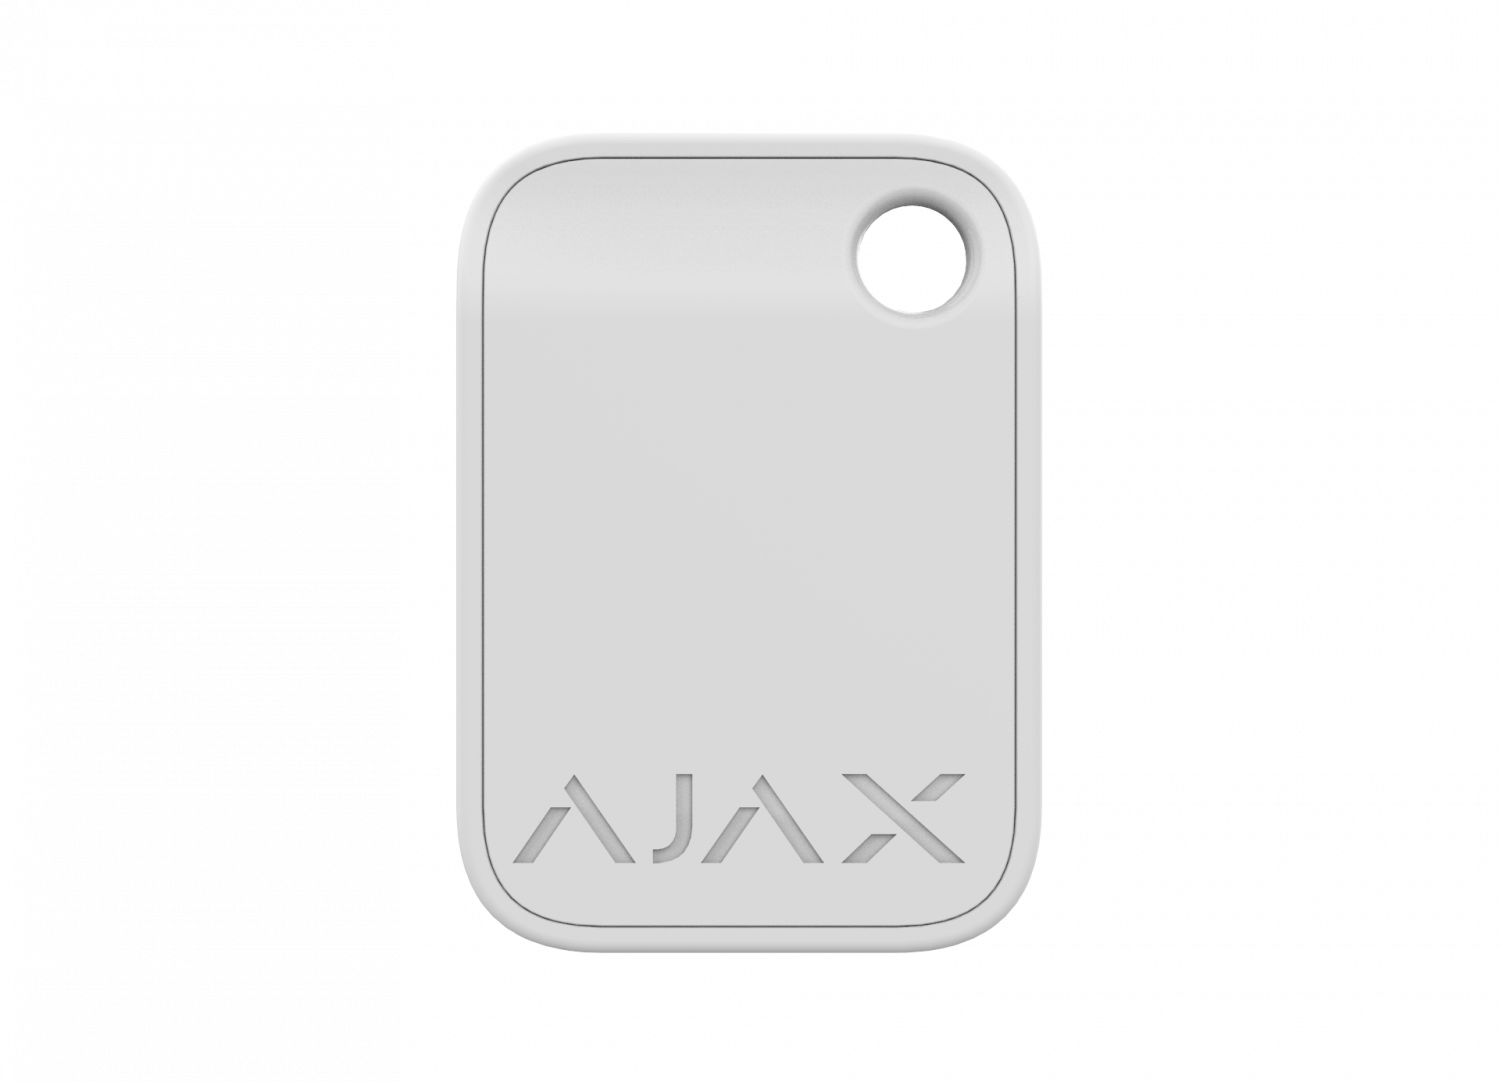 Все Ajax Tag (W) RFID брелок видеонаблюдения в магазине Vidos Group